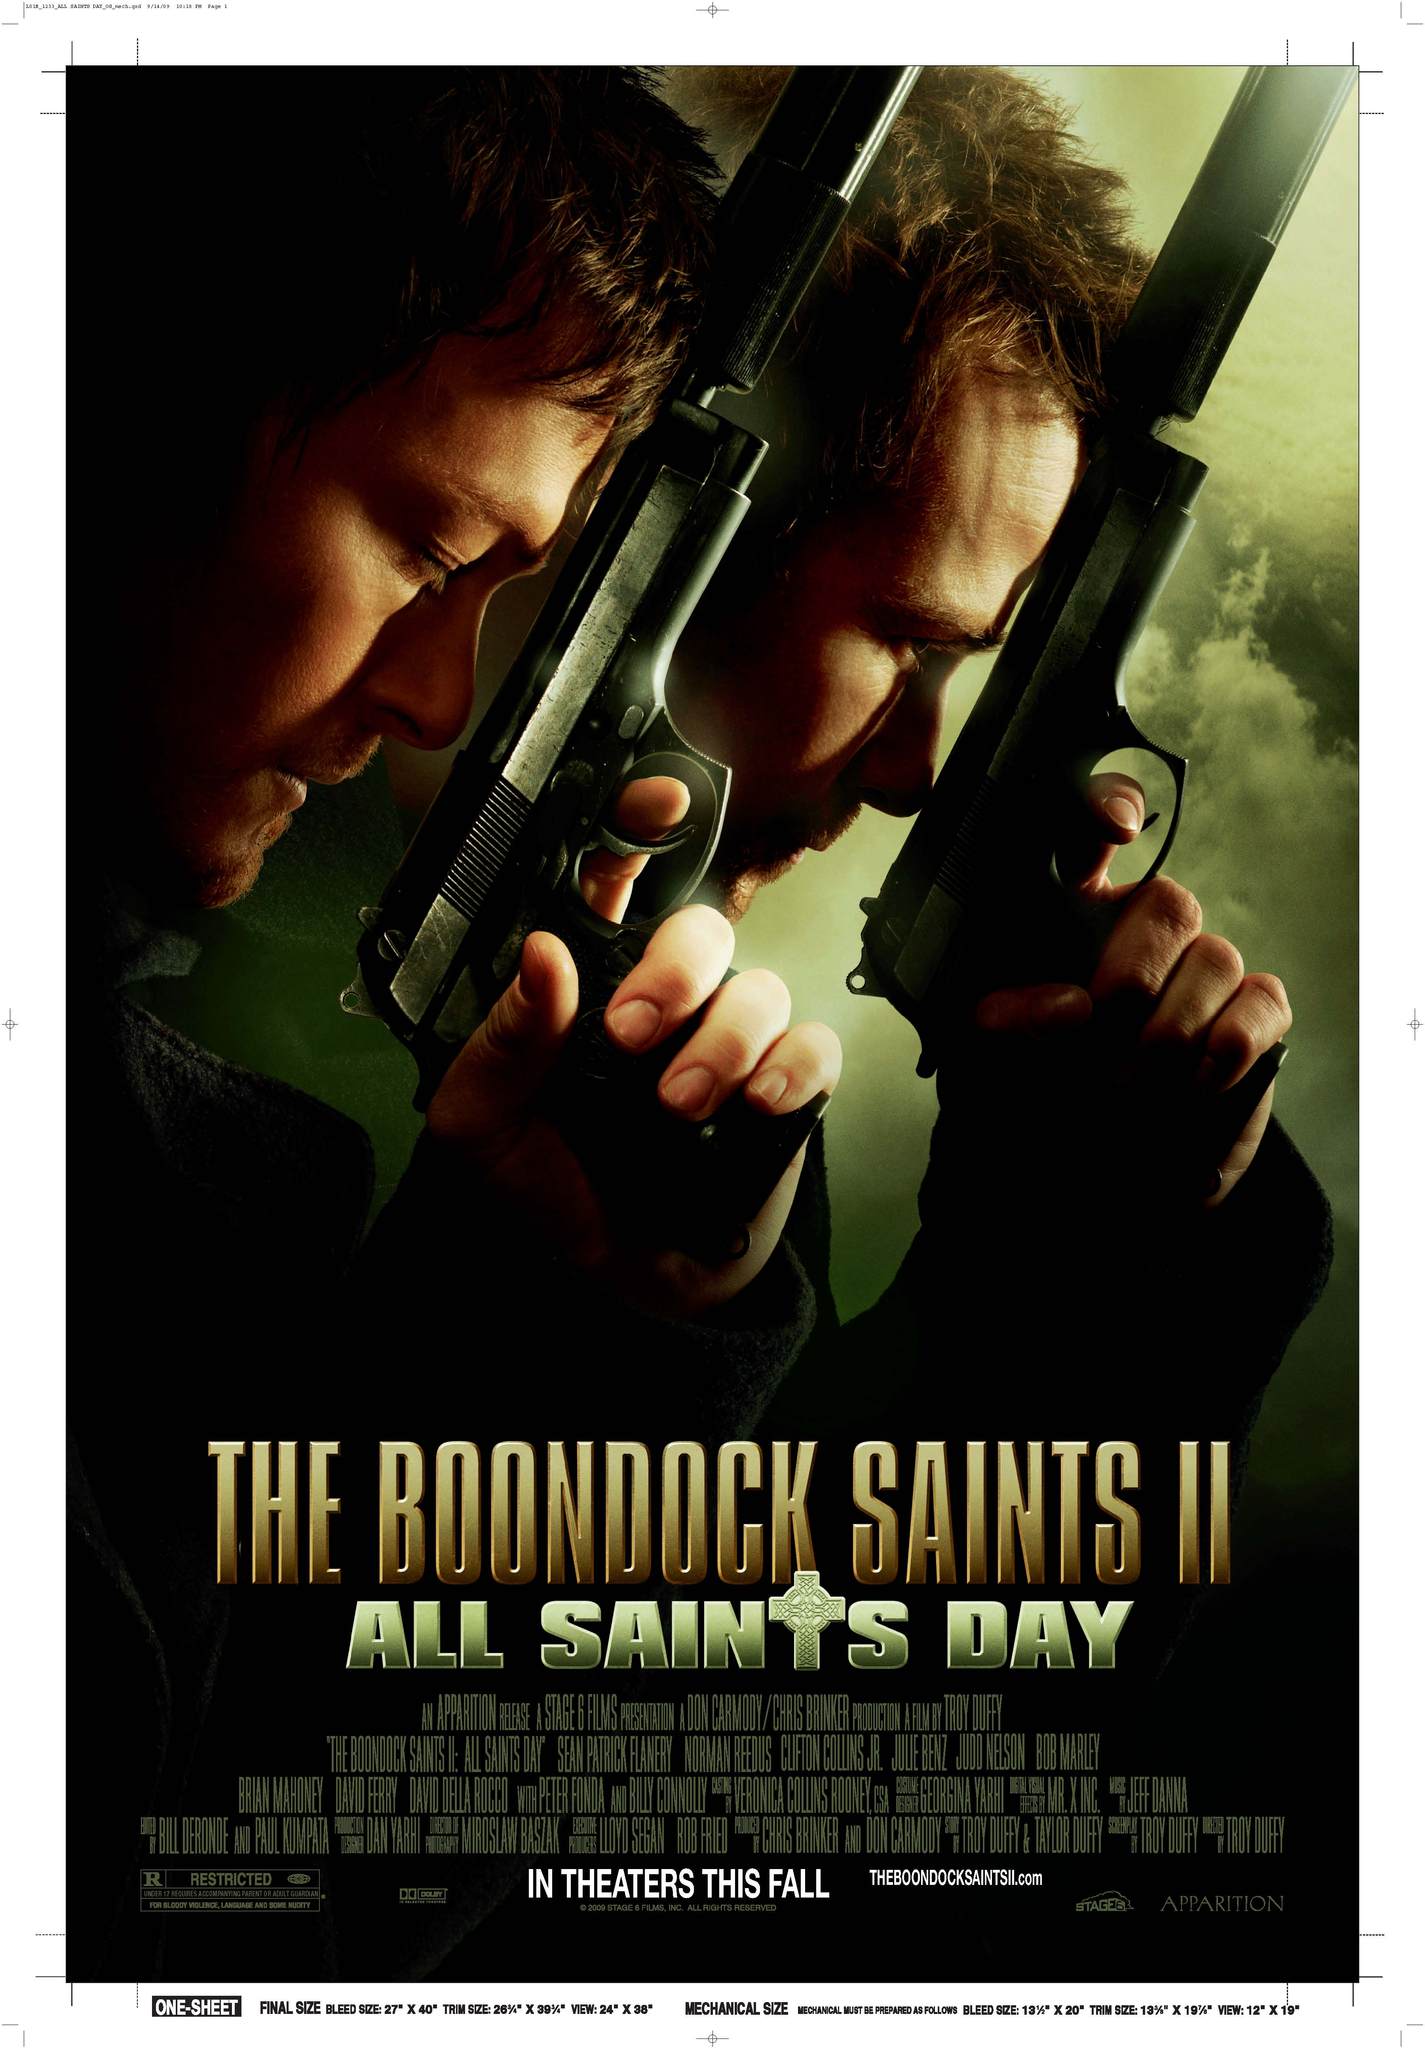 ดูหนังออนไลน์ฟรี The Boondock Saints II All Saints Day (2009) คู่นักบุญกระสุนโลกันตร์